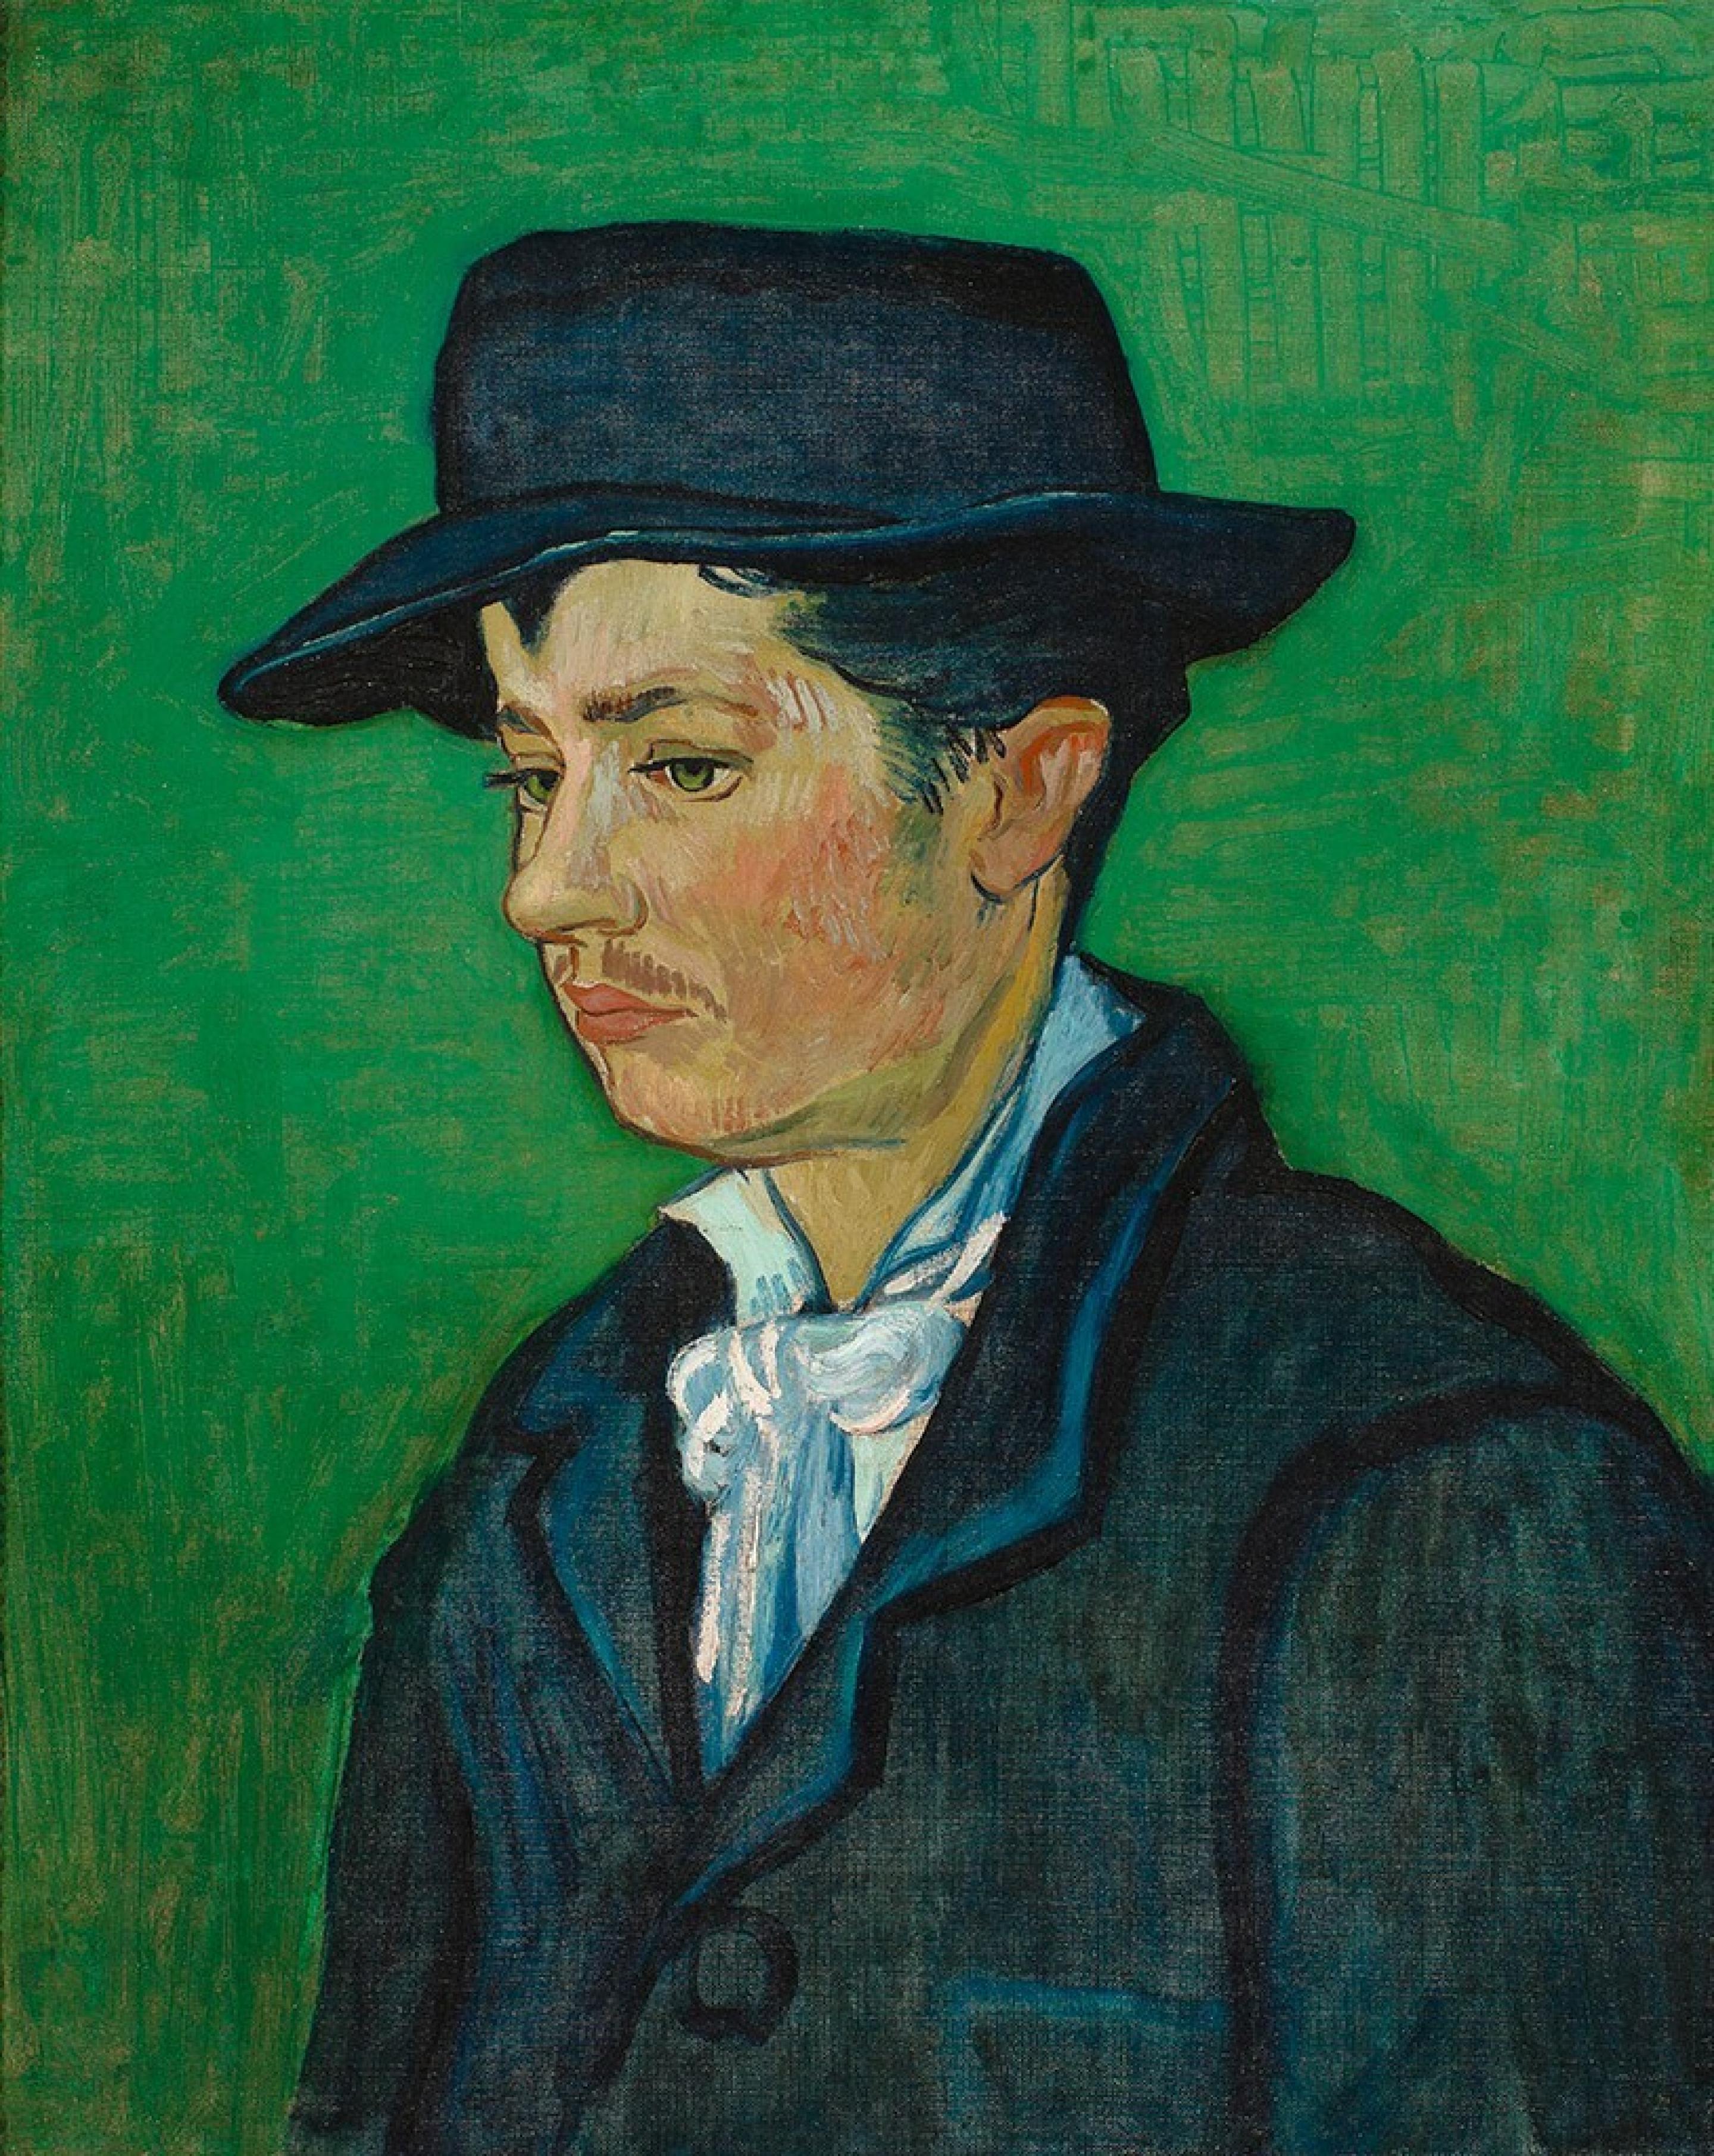 Portrait of Armand Roulin by Vincent van Gogh - 1888 - 65.5 x 54.3 cm Museum Boijmans Van Beuningen